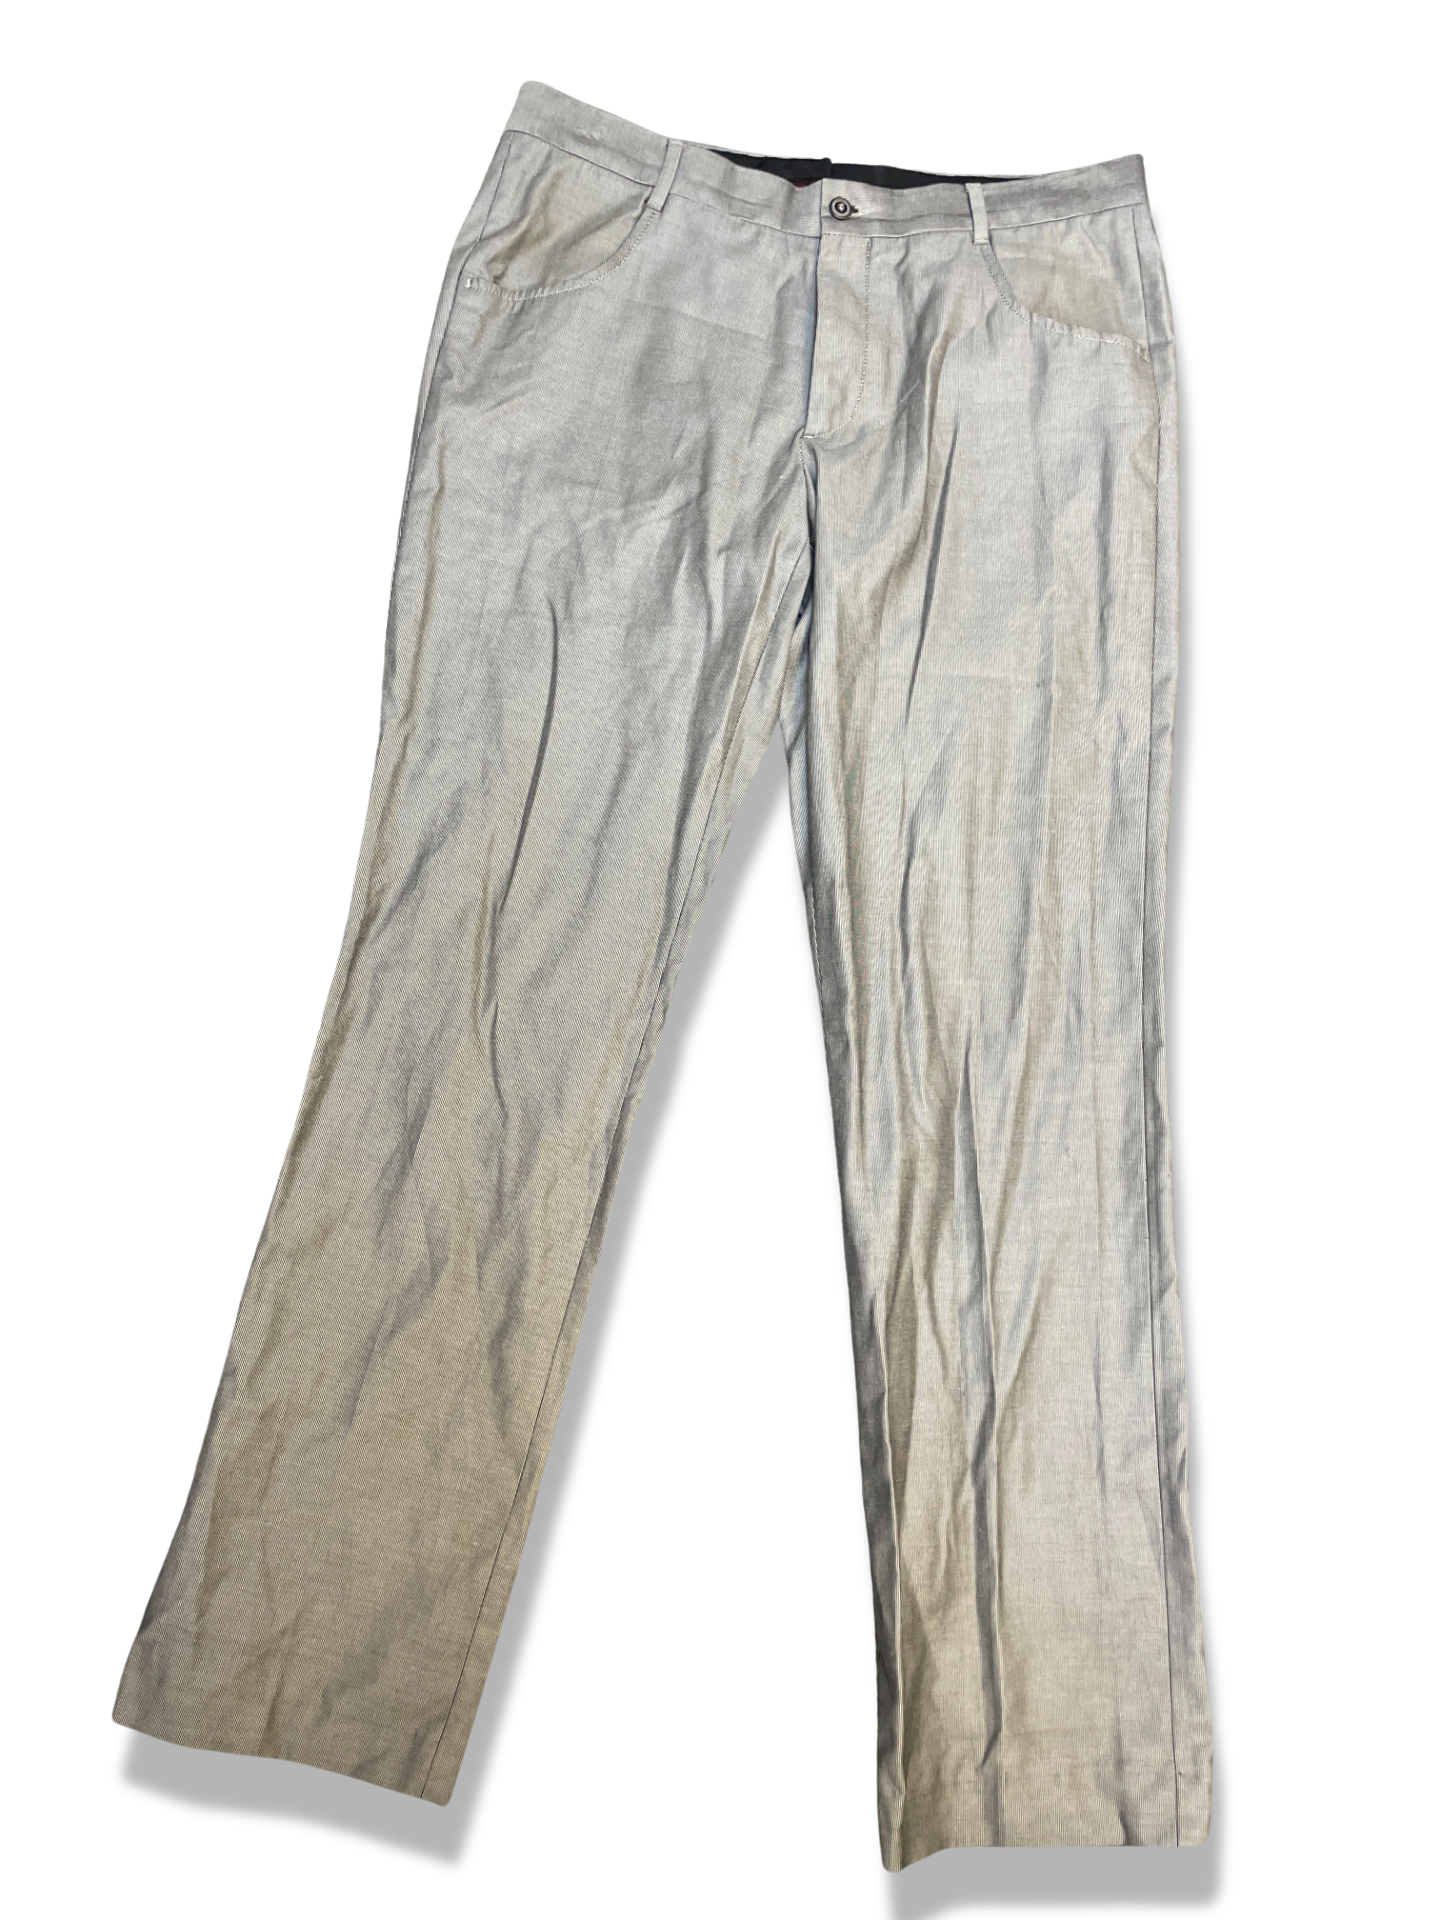 Vintage zara man grey chinos trouser